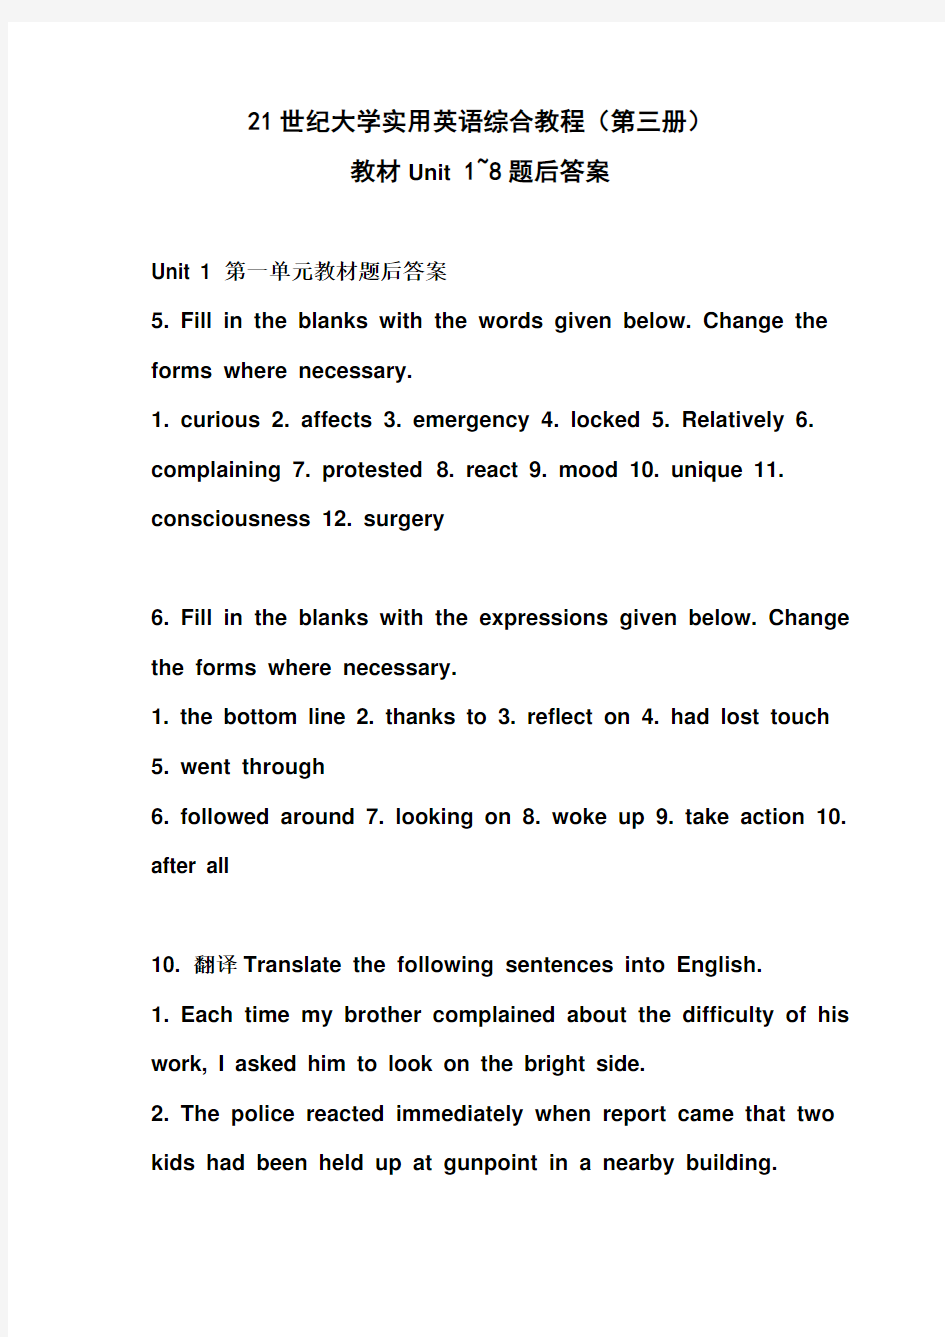 21世纪大学实用英语综合教程(第三册)-unit1-8-课文翻译及课后习题标准答案